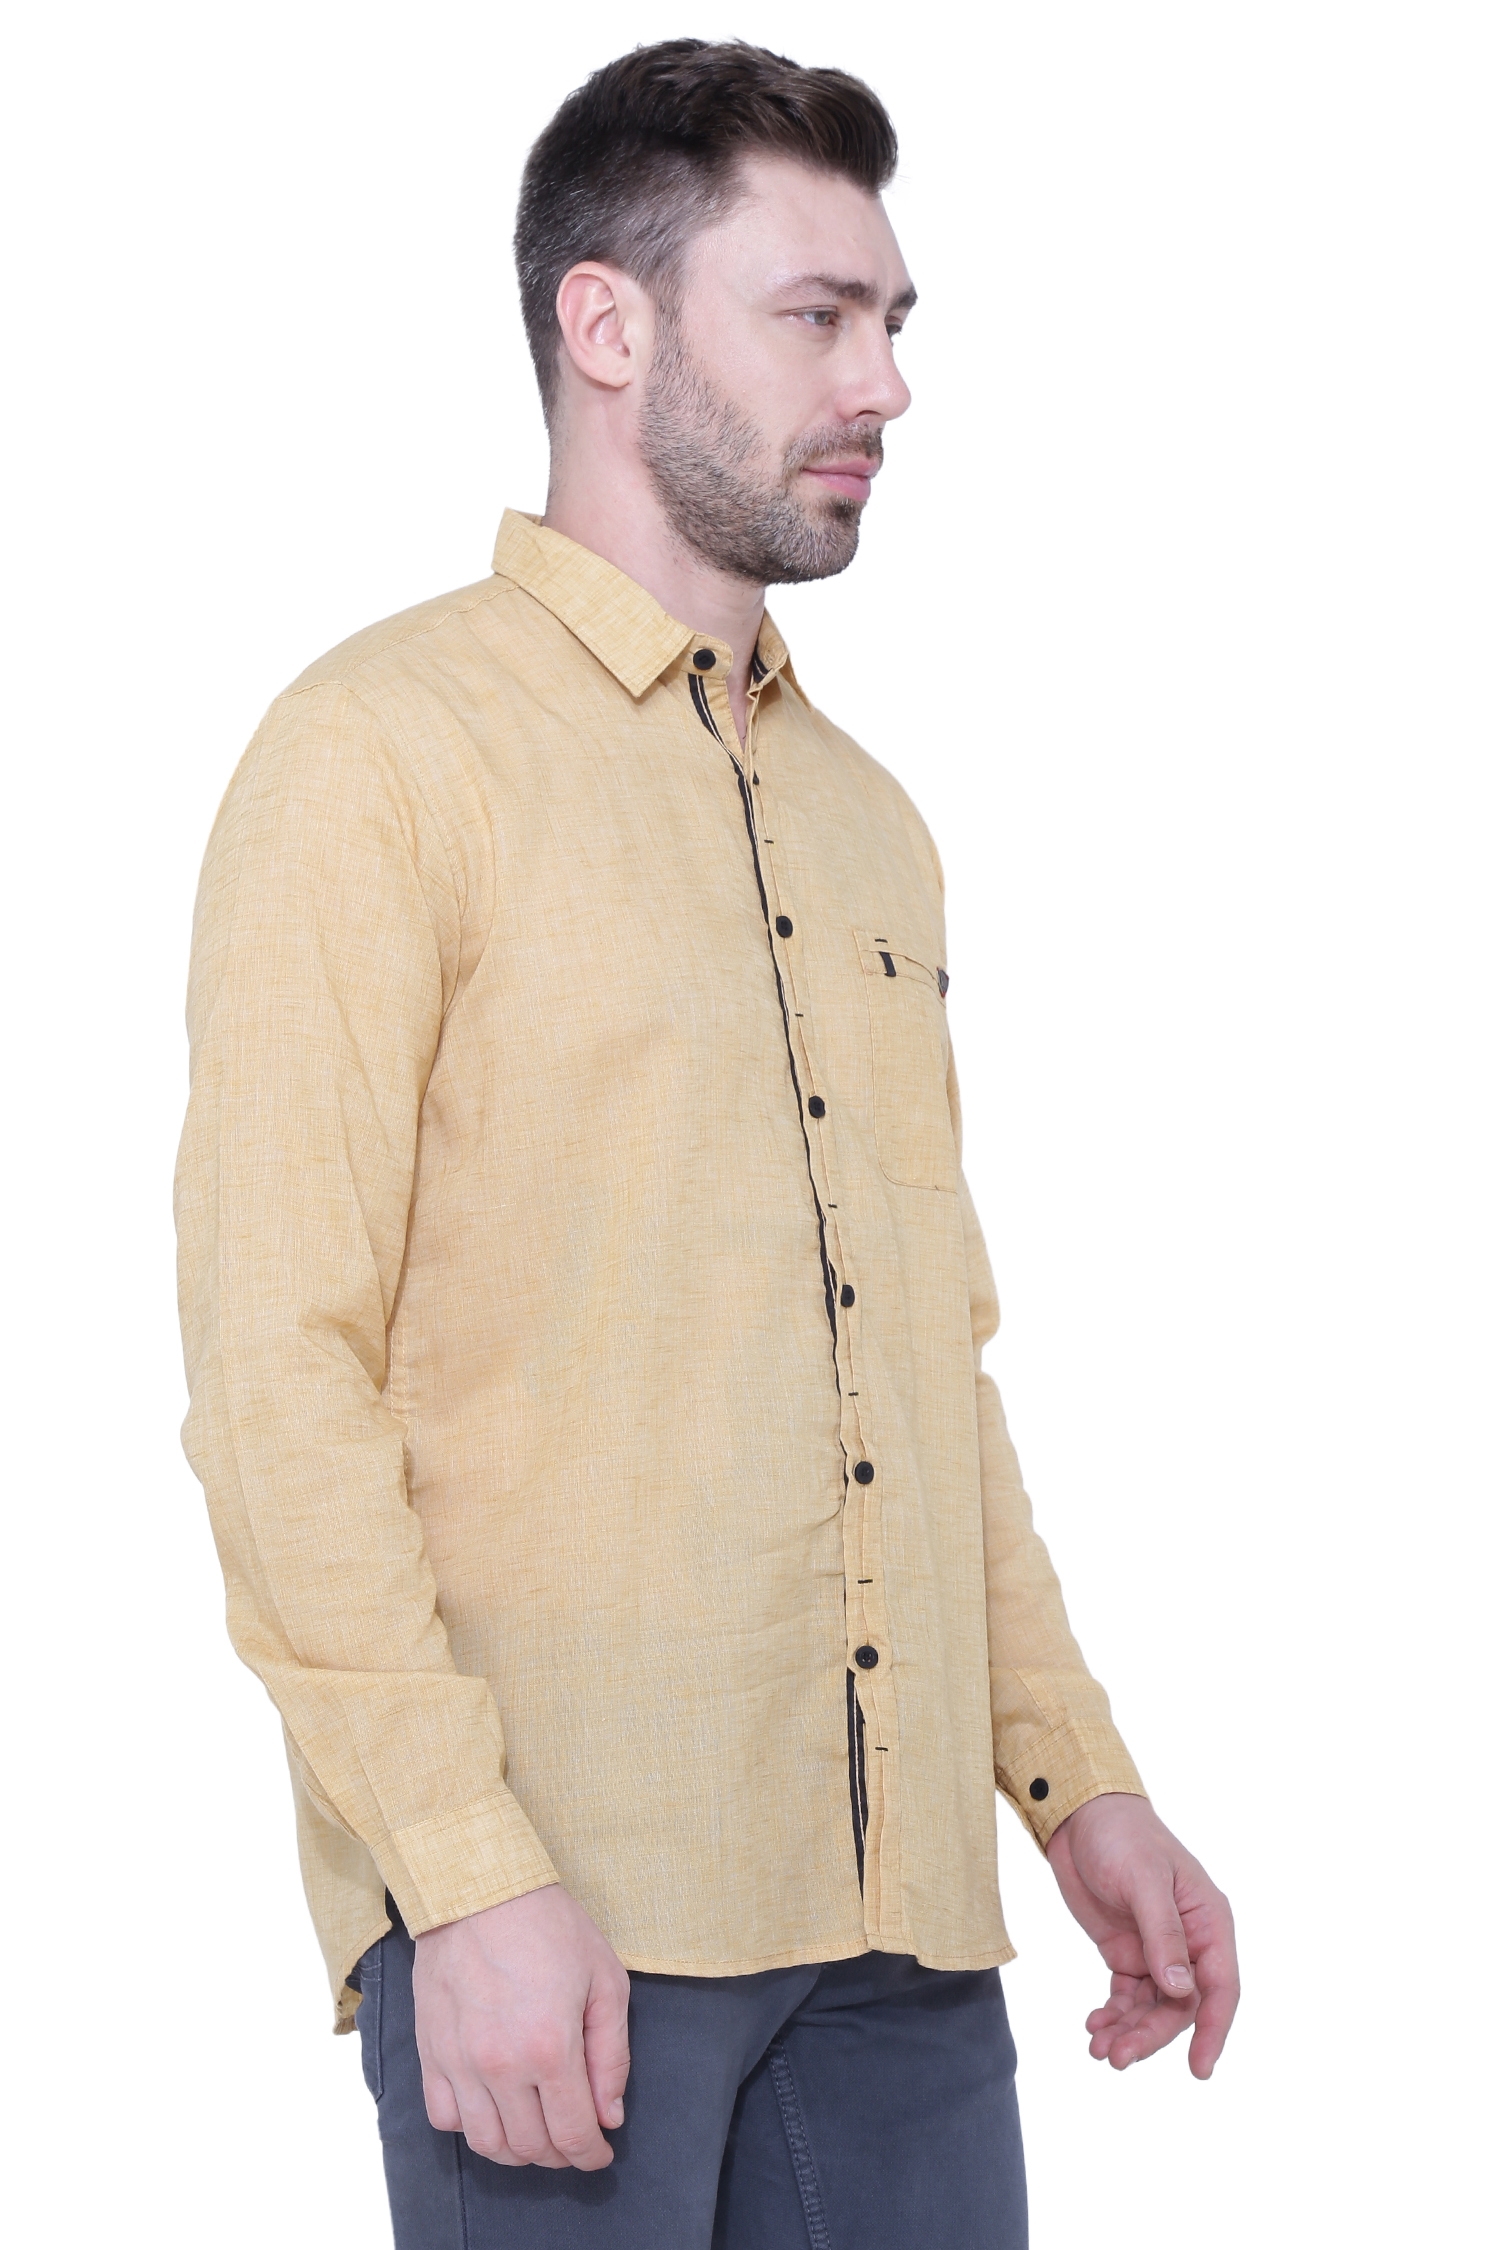 Kuons Avenue Men's Linen Casual Shirt-KACLFS1395A